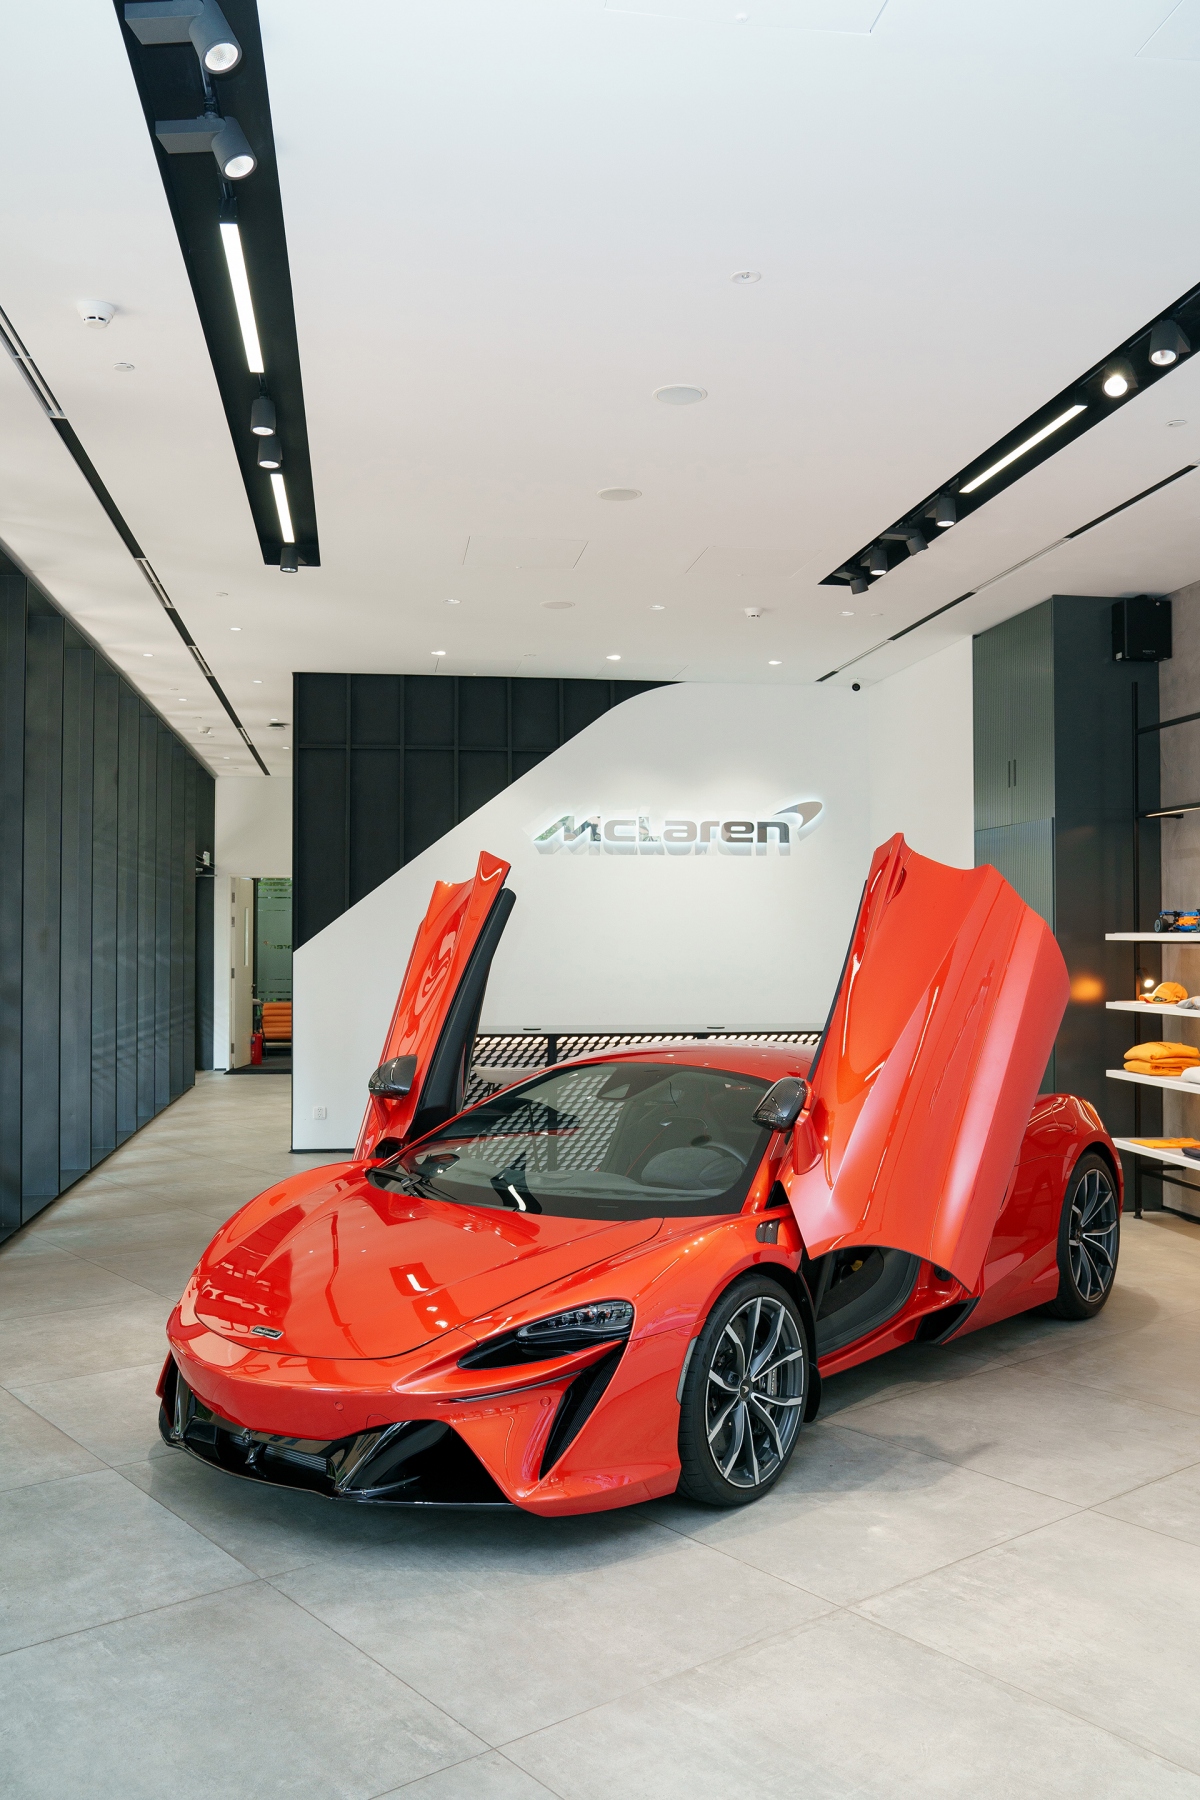 McLaren Artura chính thức bán tại Việt Nam với giá 14,69 tỷ đồng - Ảnh 2.